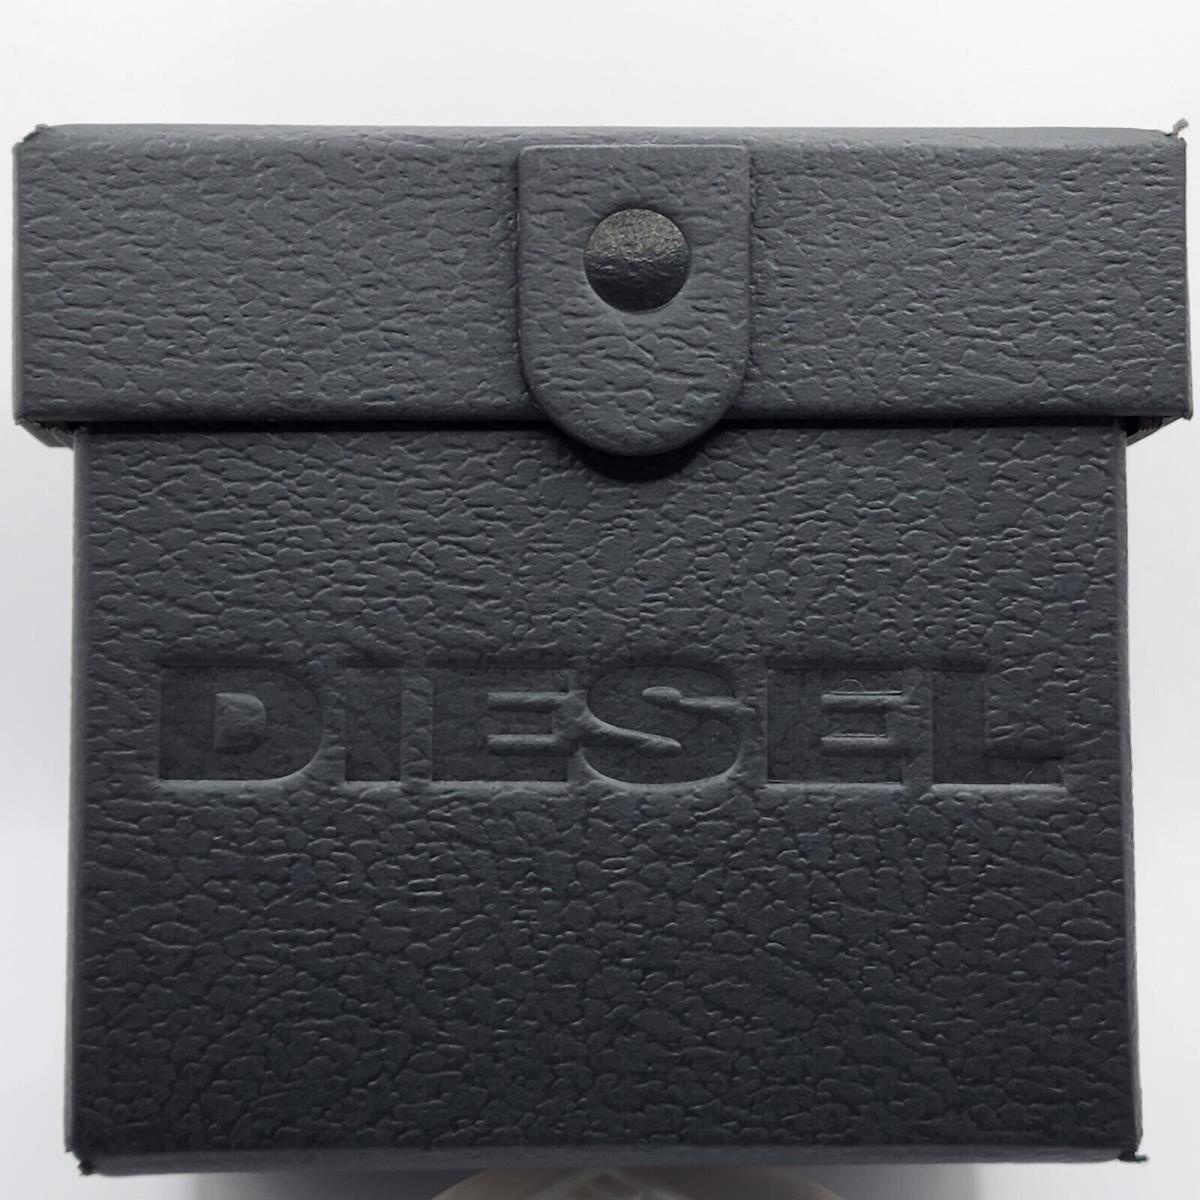 Diesel Men`s Watch Griffed DZ4586 - Gunmetal-tone Chronograph - Brands Diesel watch Steel Fash 698615143436 | Stainless